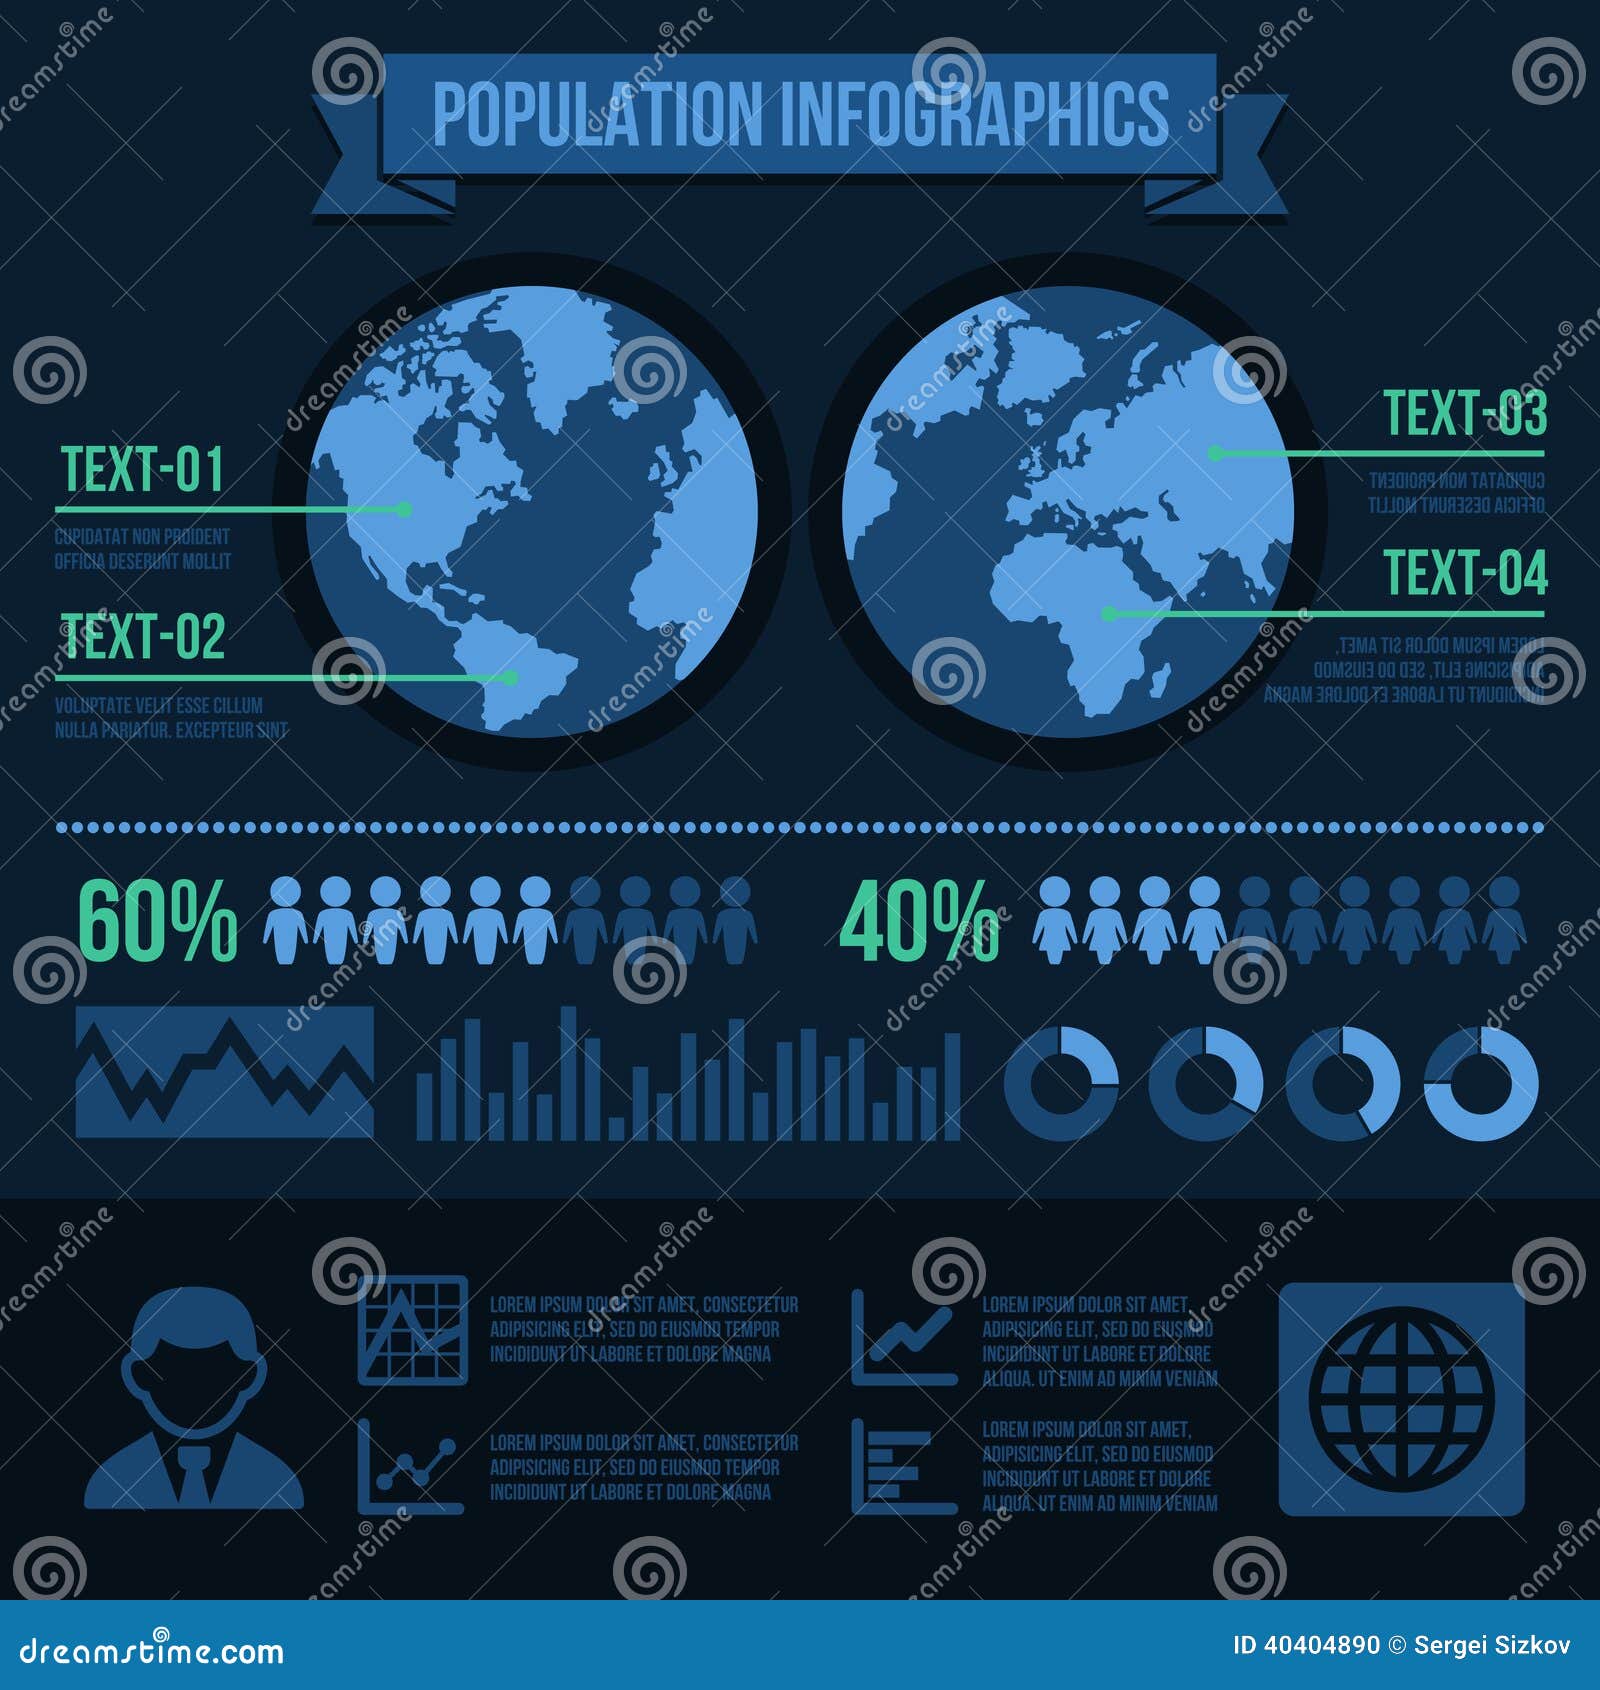 demographic infographic